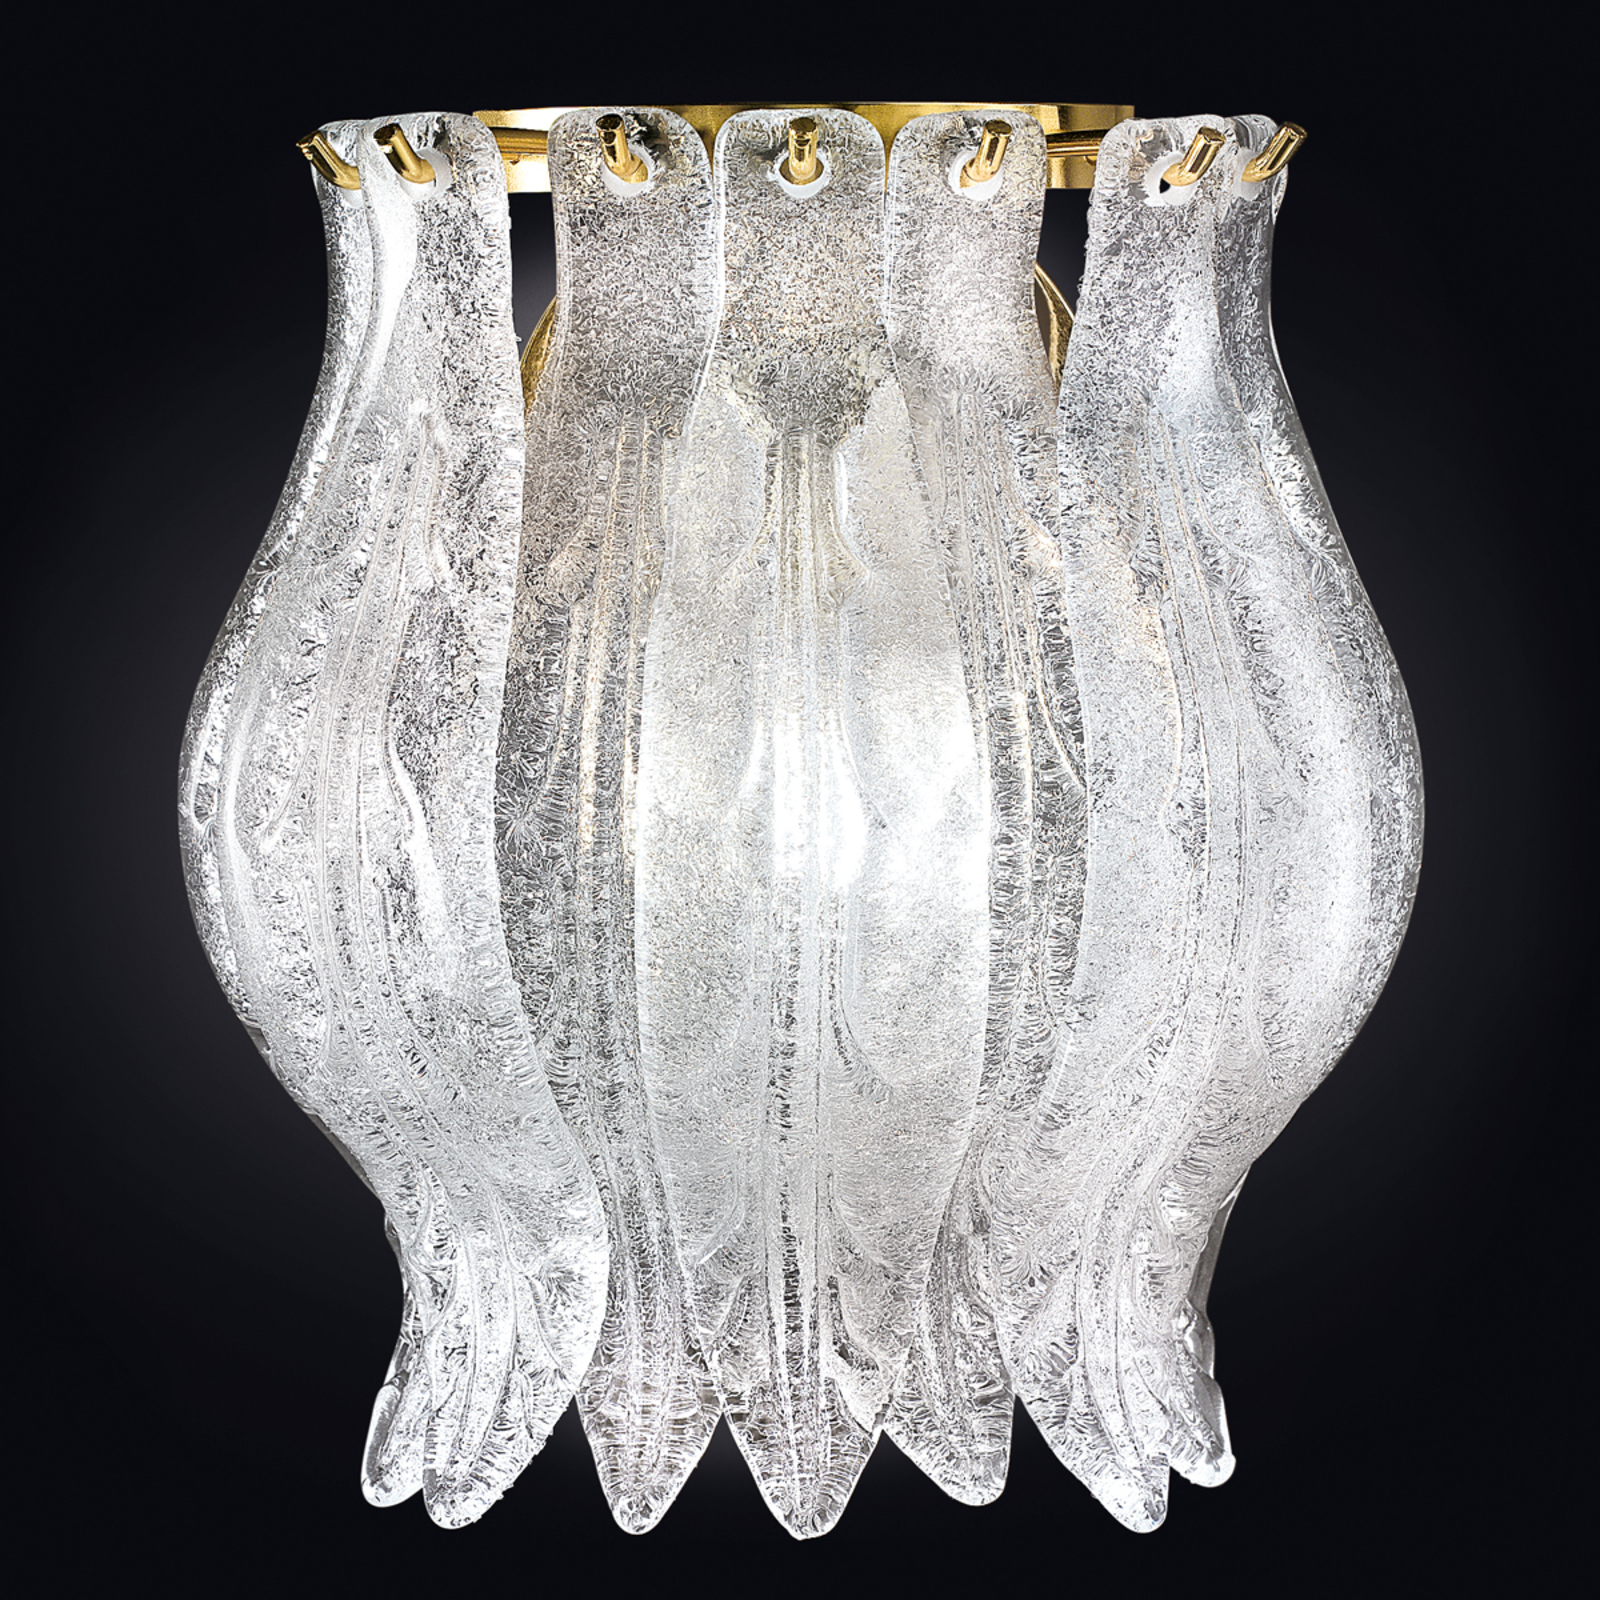 Vägglampa Petali med Muranoglas 19 cm